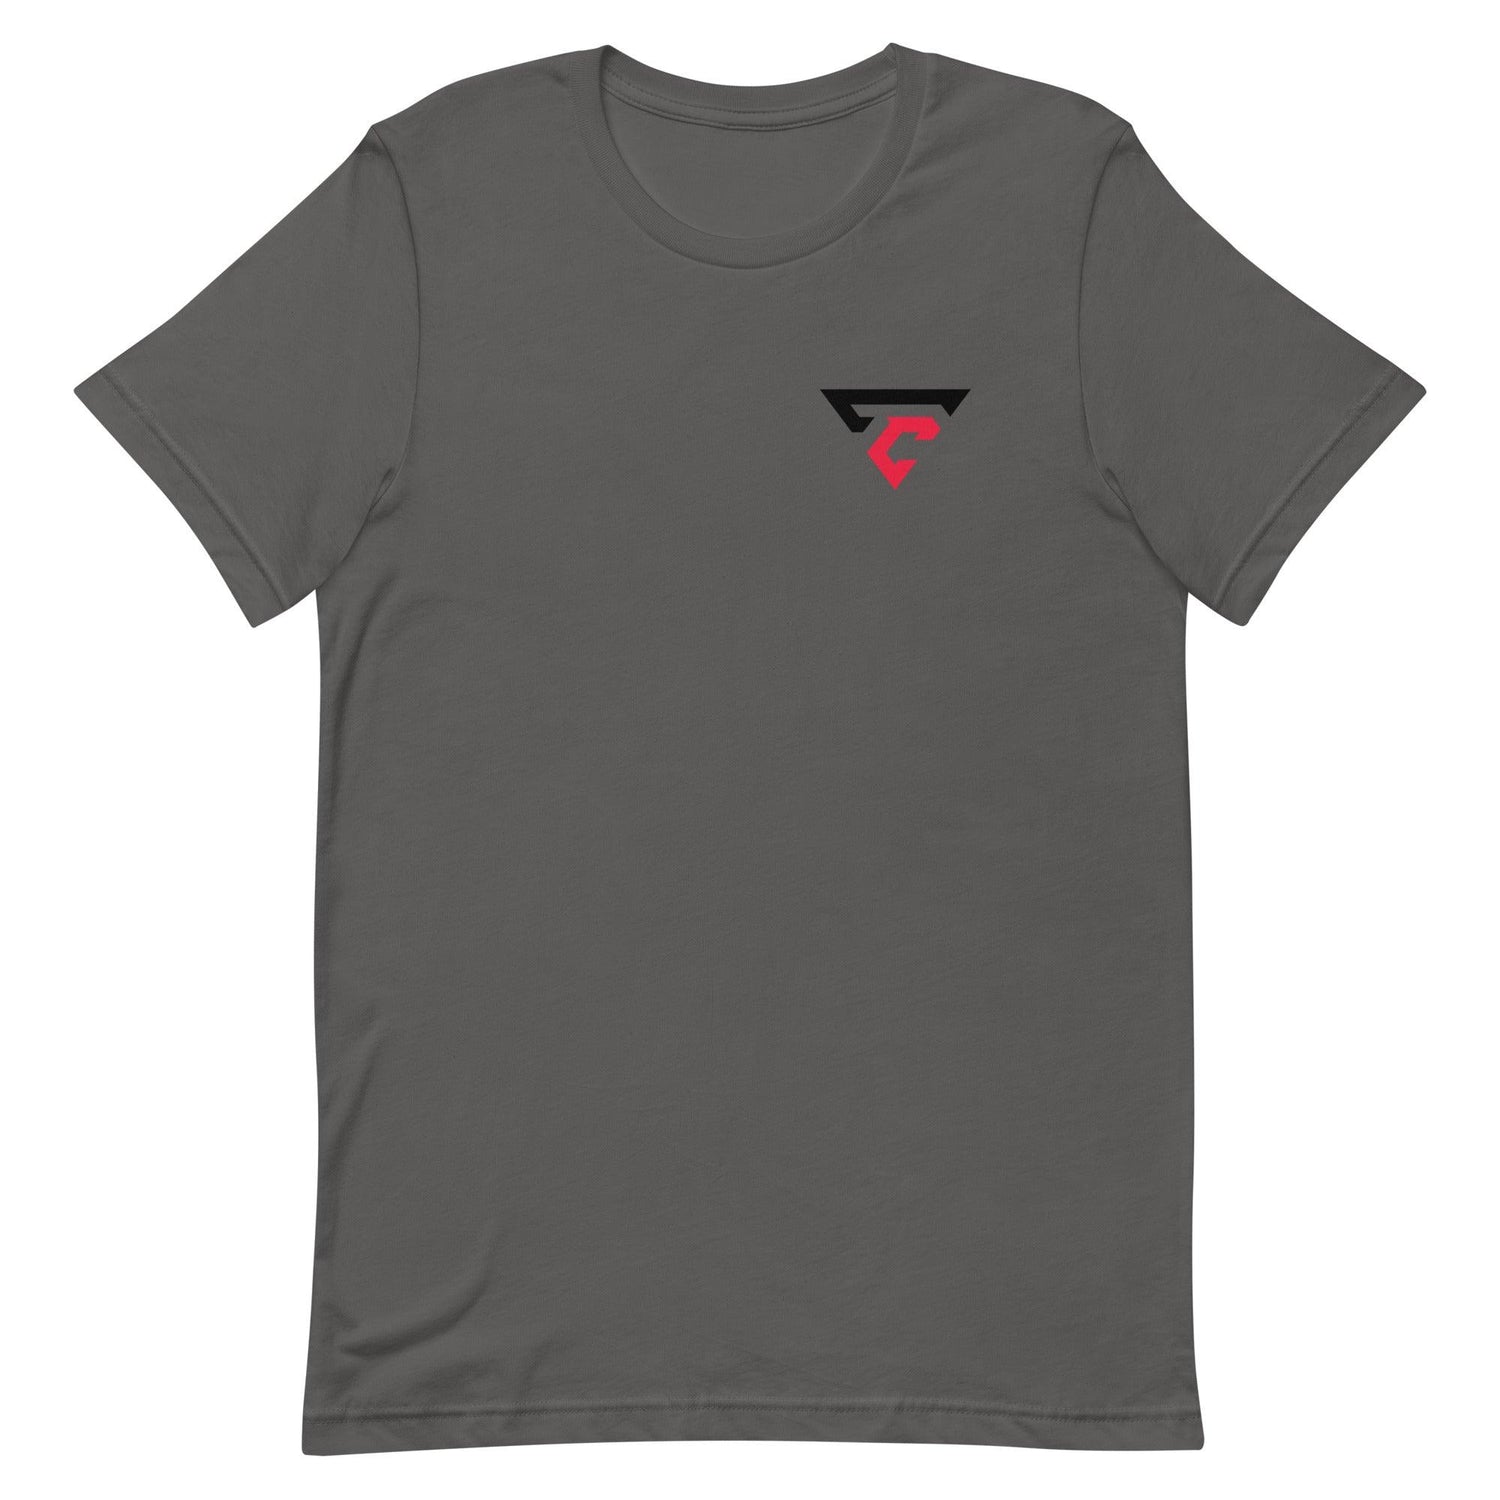 Trevor Carter "Essential" t-shirt - Fan Arch